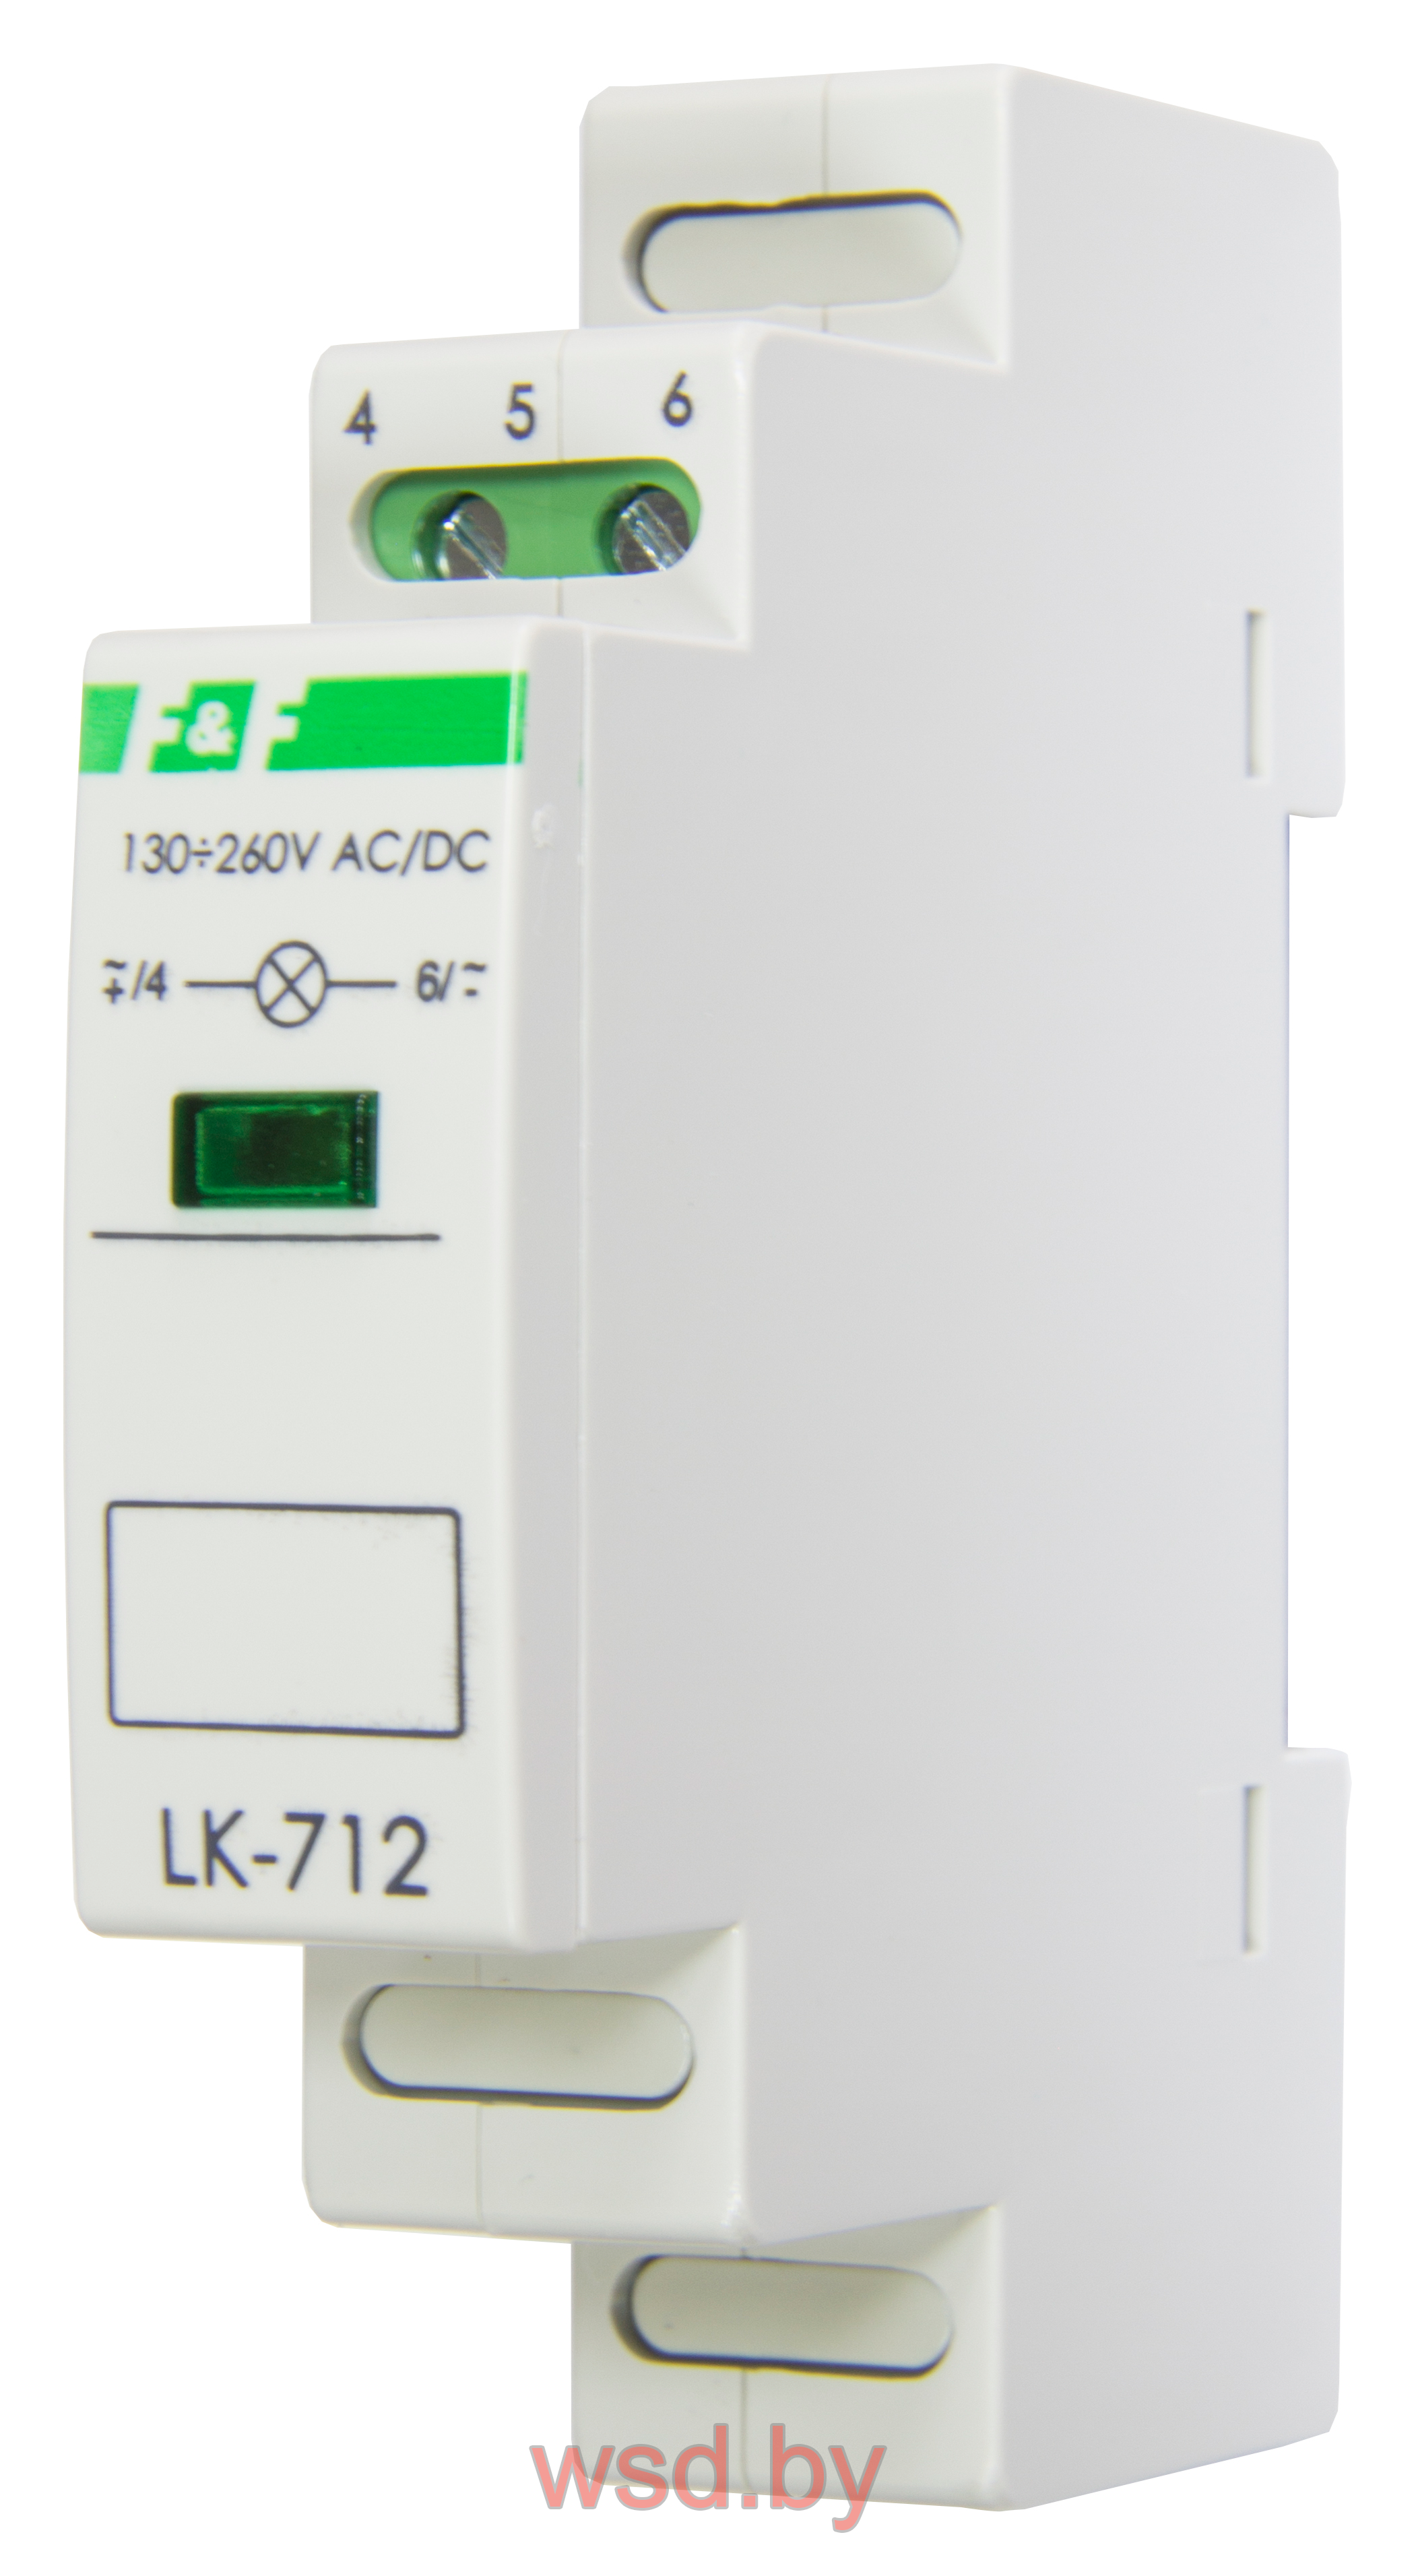 Указатель напряжения LK-712-R-2 сигнализация наличия одной фазы, цвет КРАСНЫЙ,  1 модуль, монтаж на DIN-рейке 10-30 В AC/DC IP20 